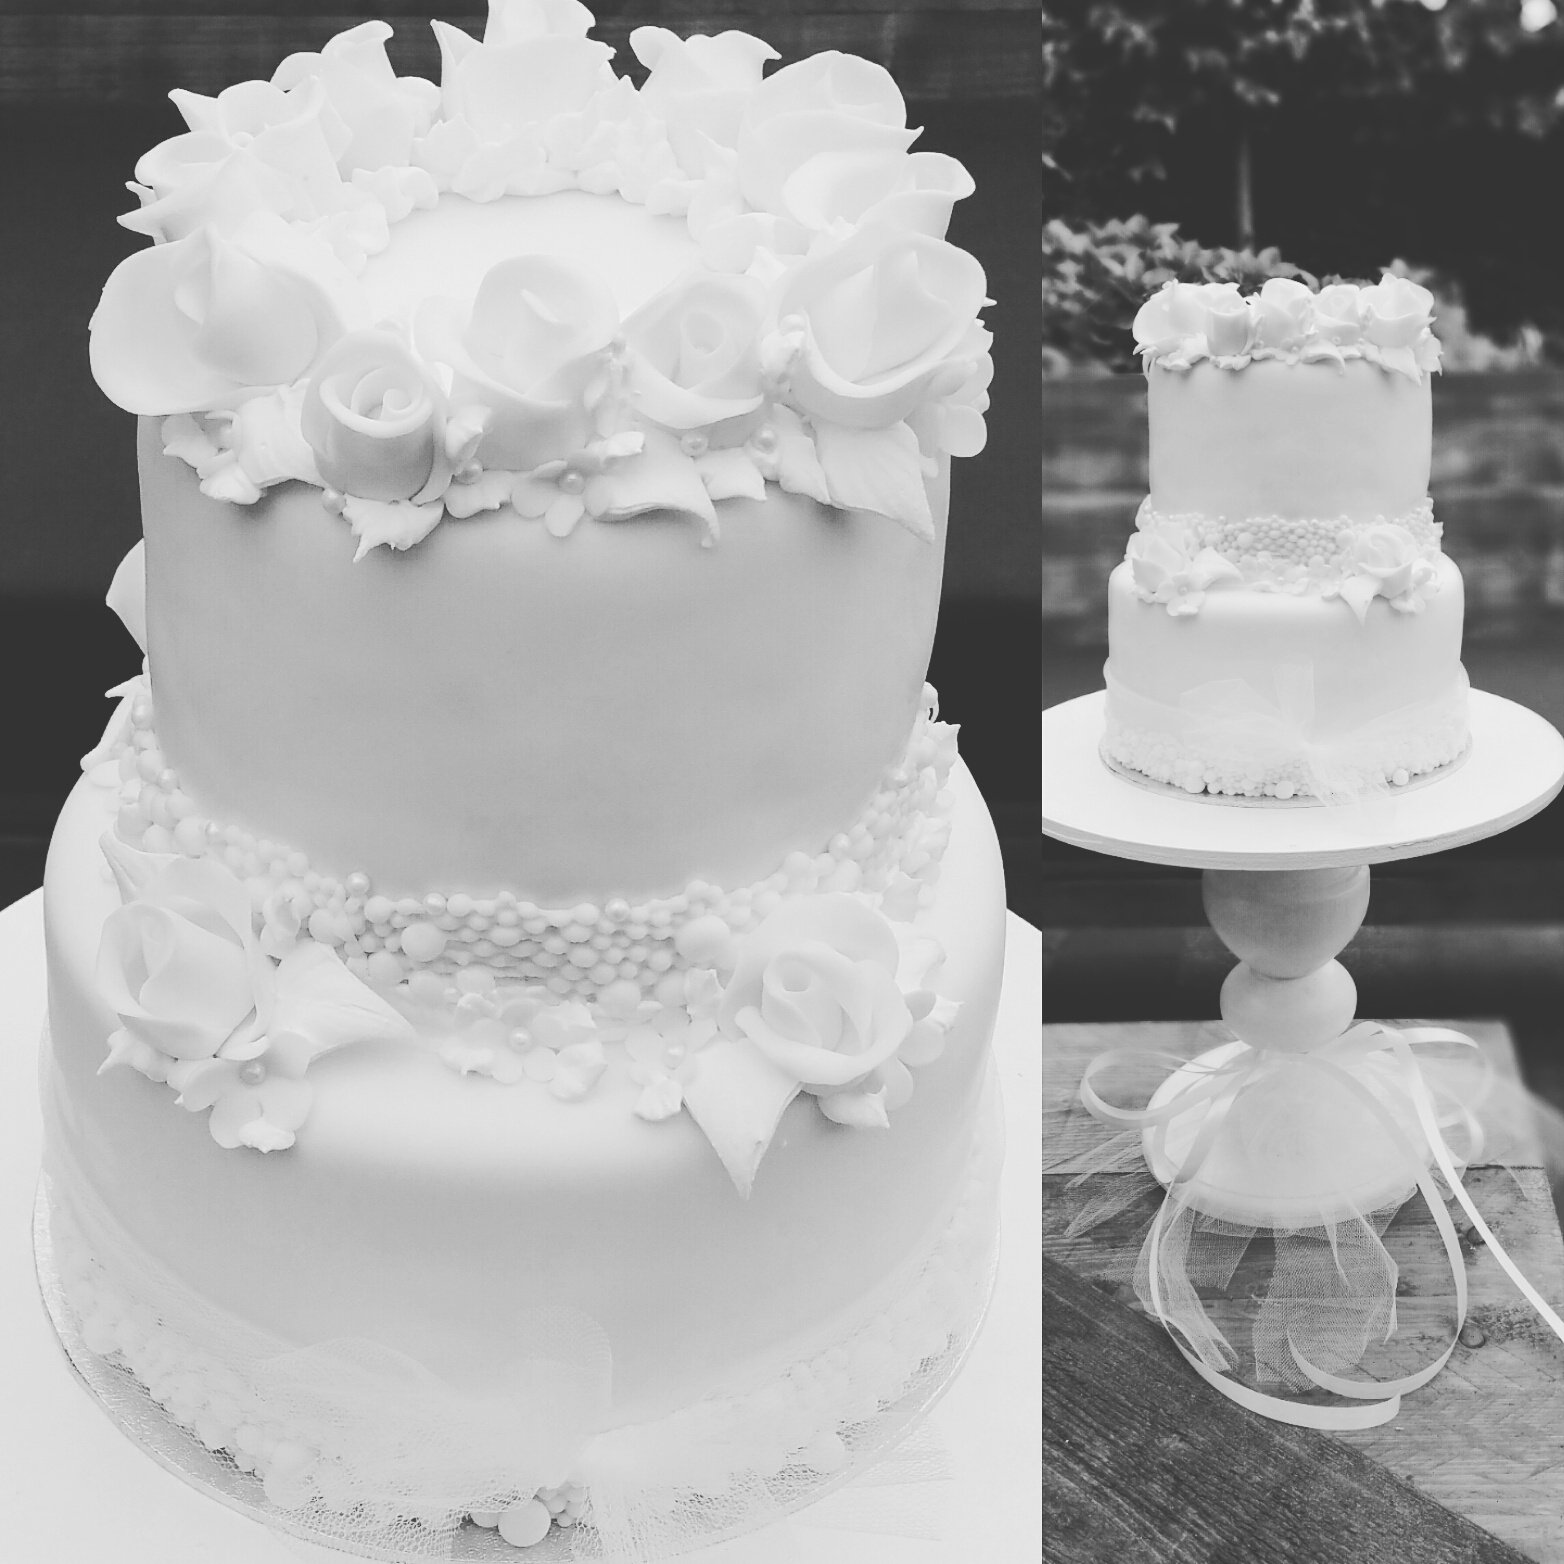 \ Taart van Jet على تويتر: "#bruiloft #Bruidstaarten #fondant #fondantroses #taartvanjet# met fondant rozen. https://t.co/FaYGVpmty6"